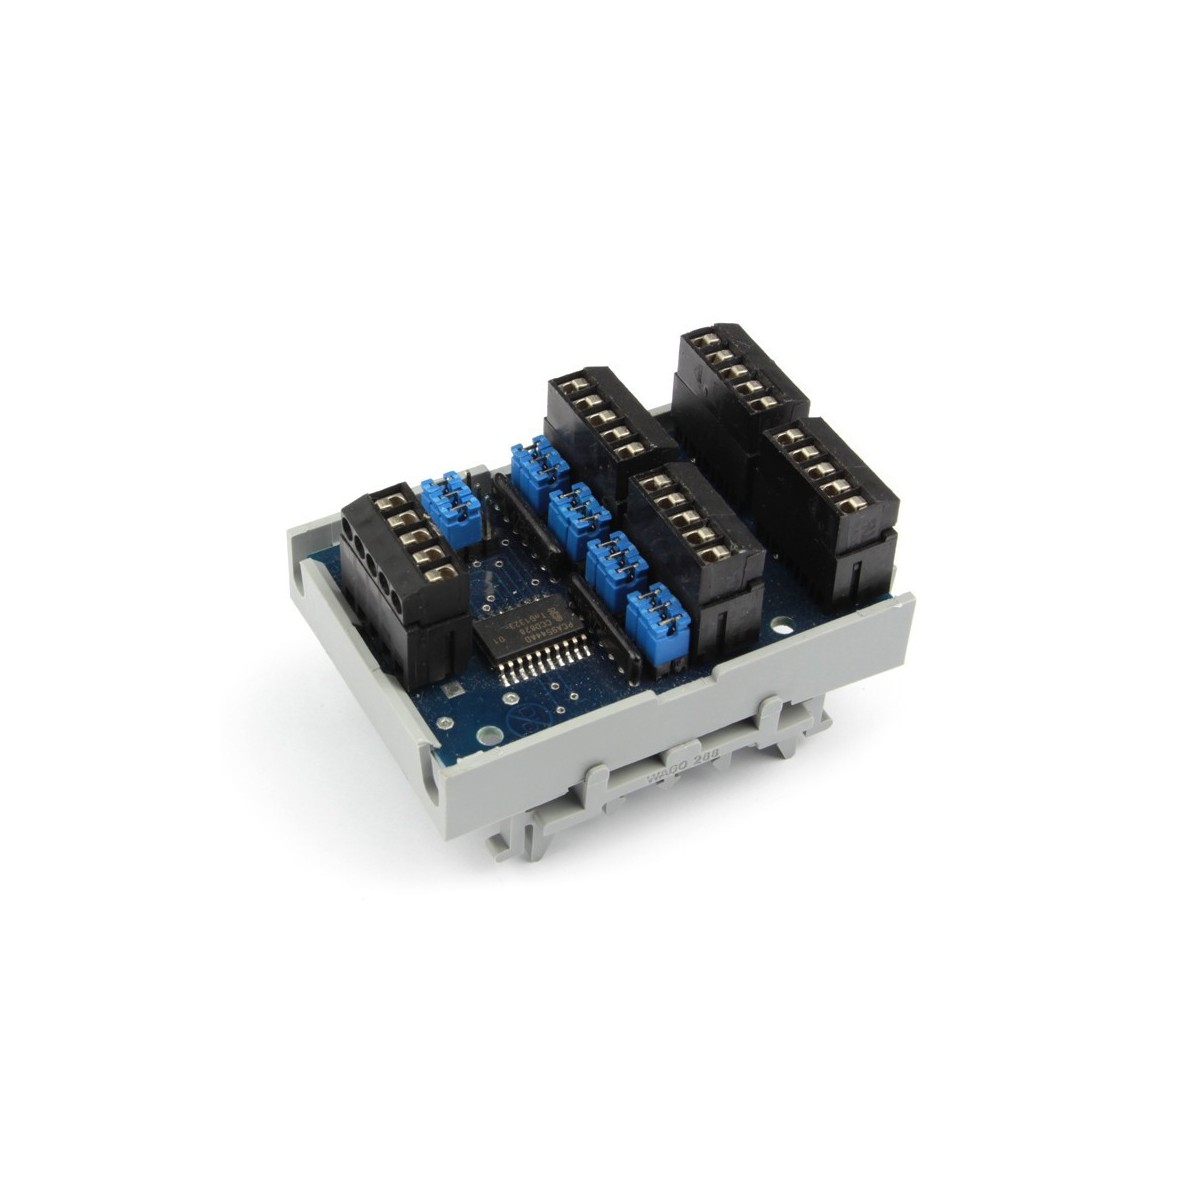 Kit I2C multiplexer PCA9544A for DIN rail